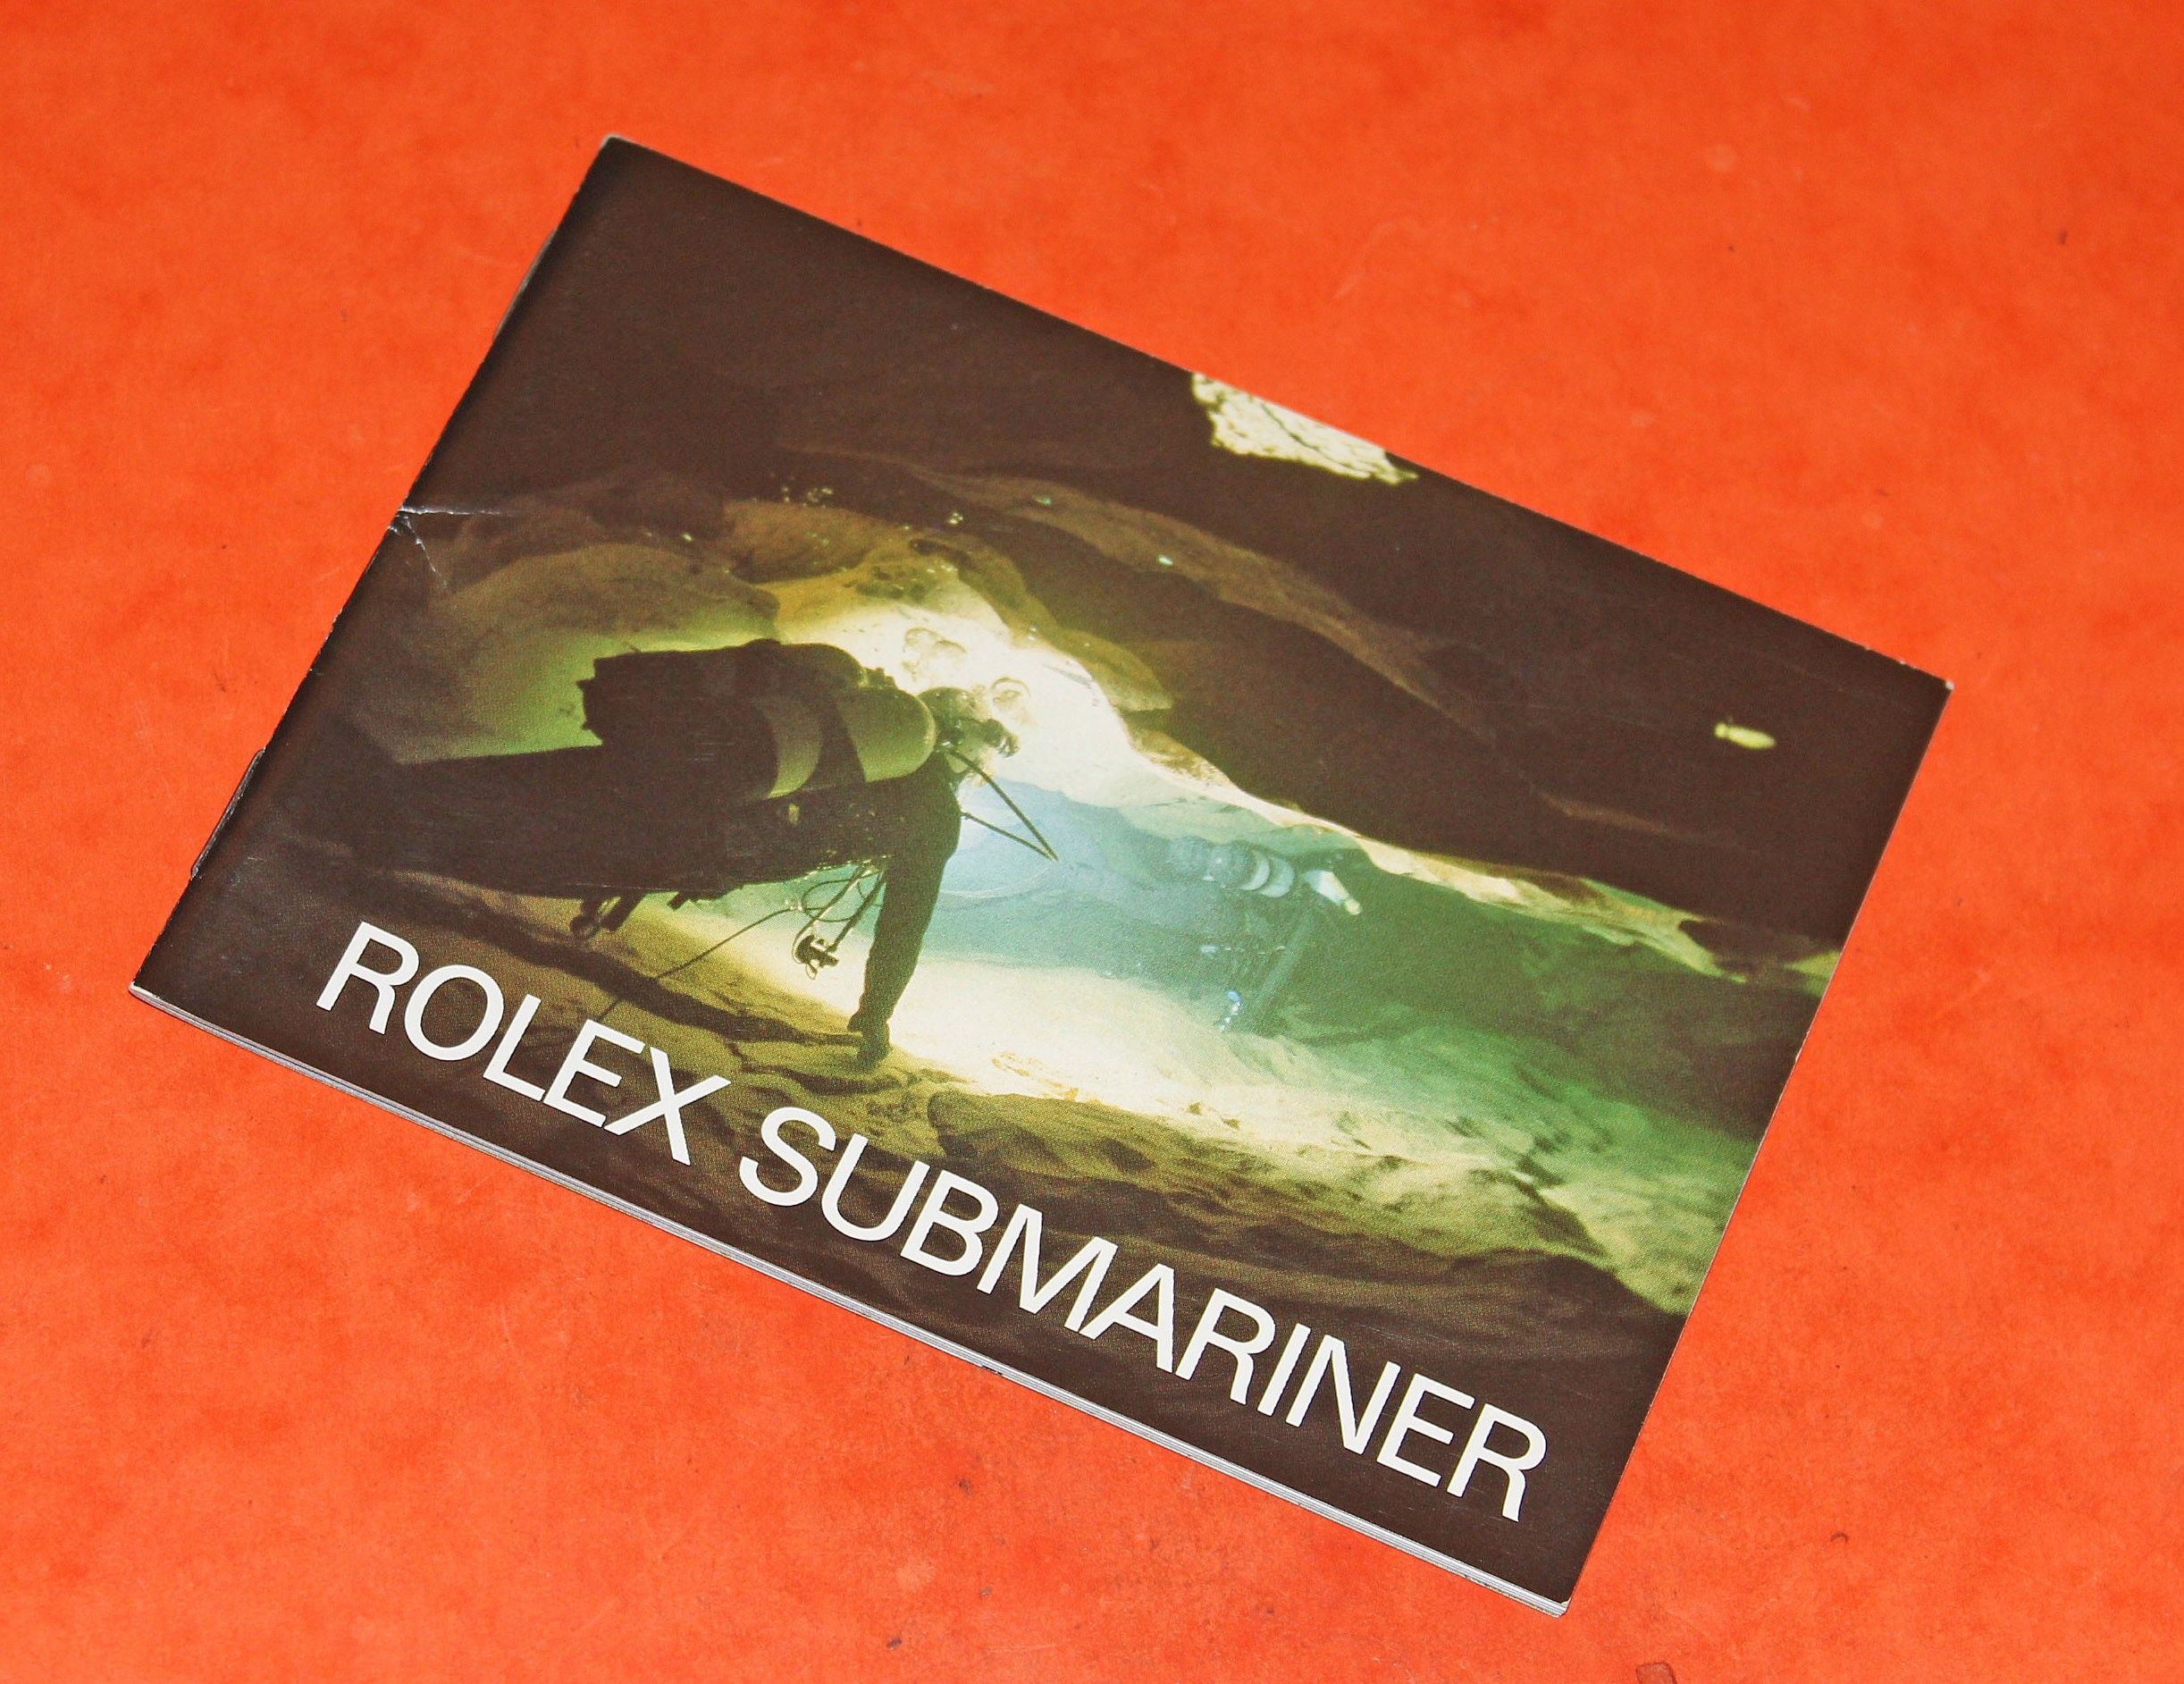 Rolex Submariner, Sea Dweller booklet 